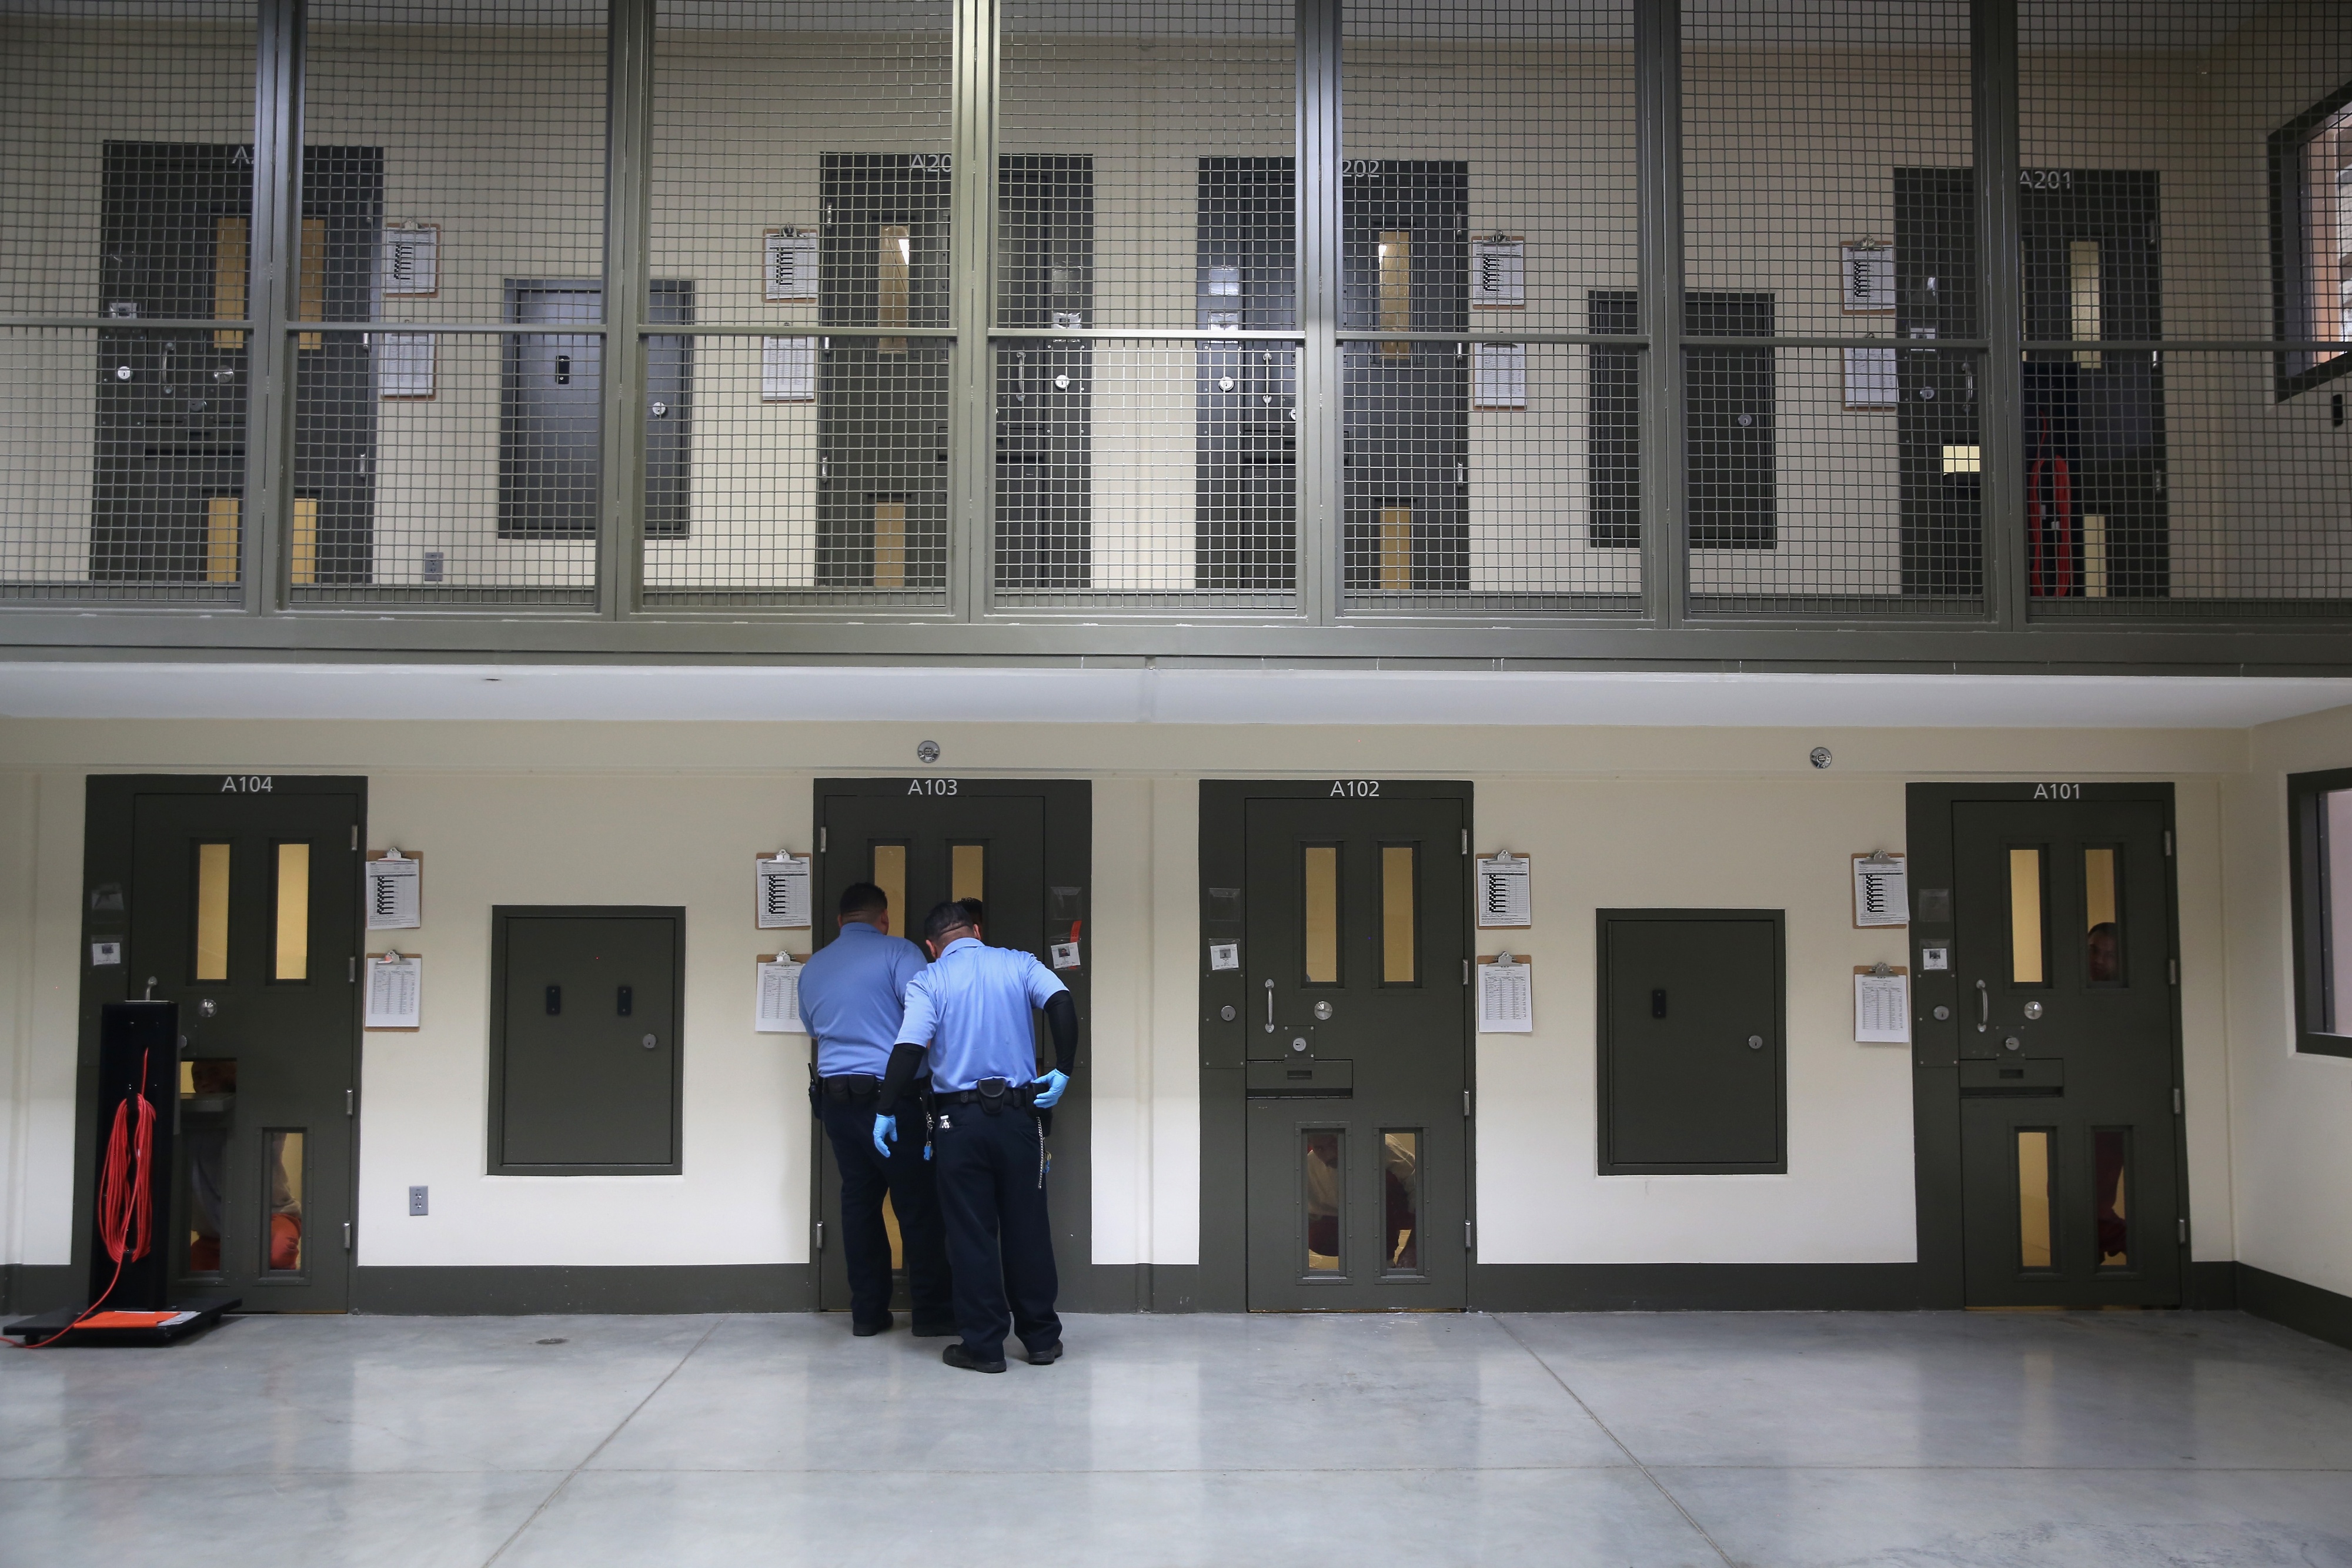 Los guardias se preparan para escoltar a un inmigrante detenido desde su "celda de aislamiento" de vuelta a las instalaciones de la población general en el Centro de Detención de Adelanto, Adelanto, California, el 15 de noviembre de 2013.